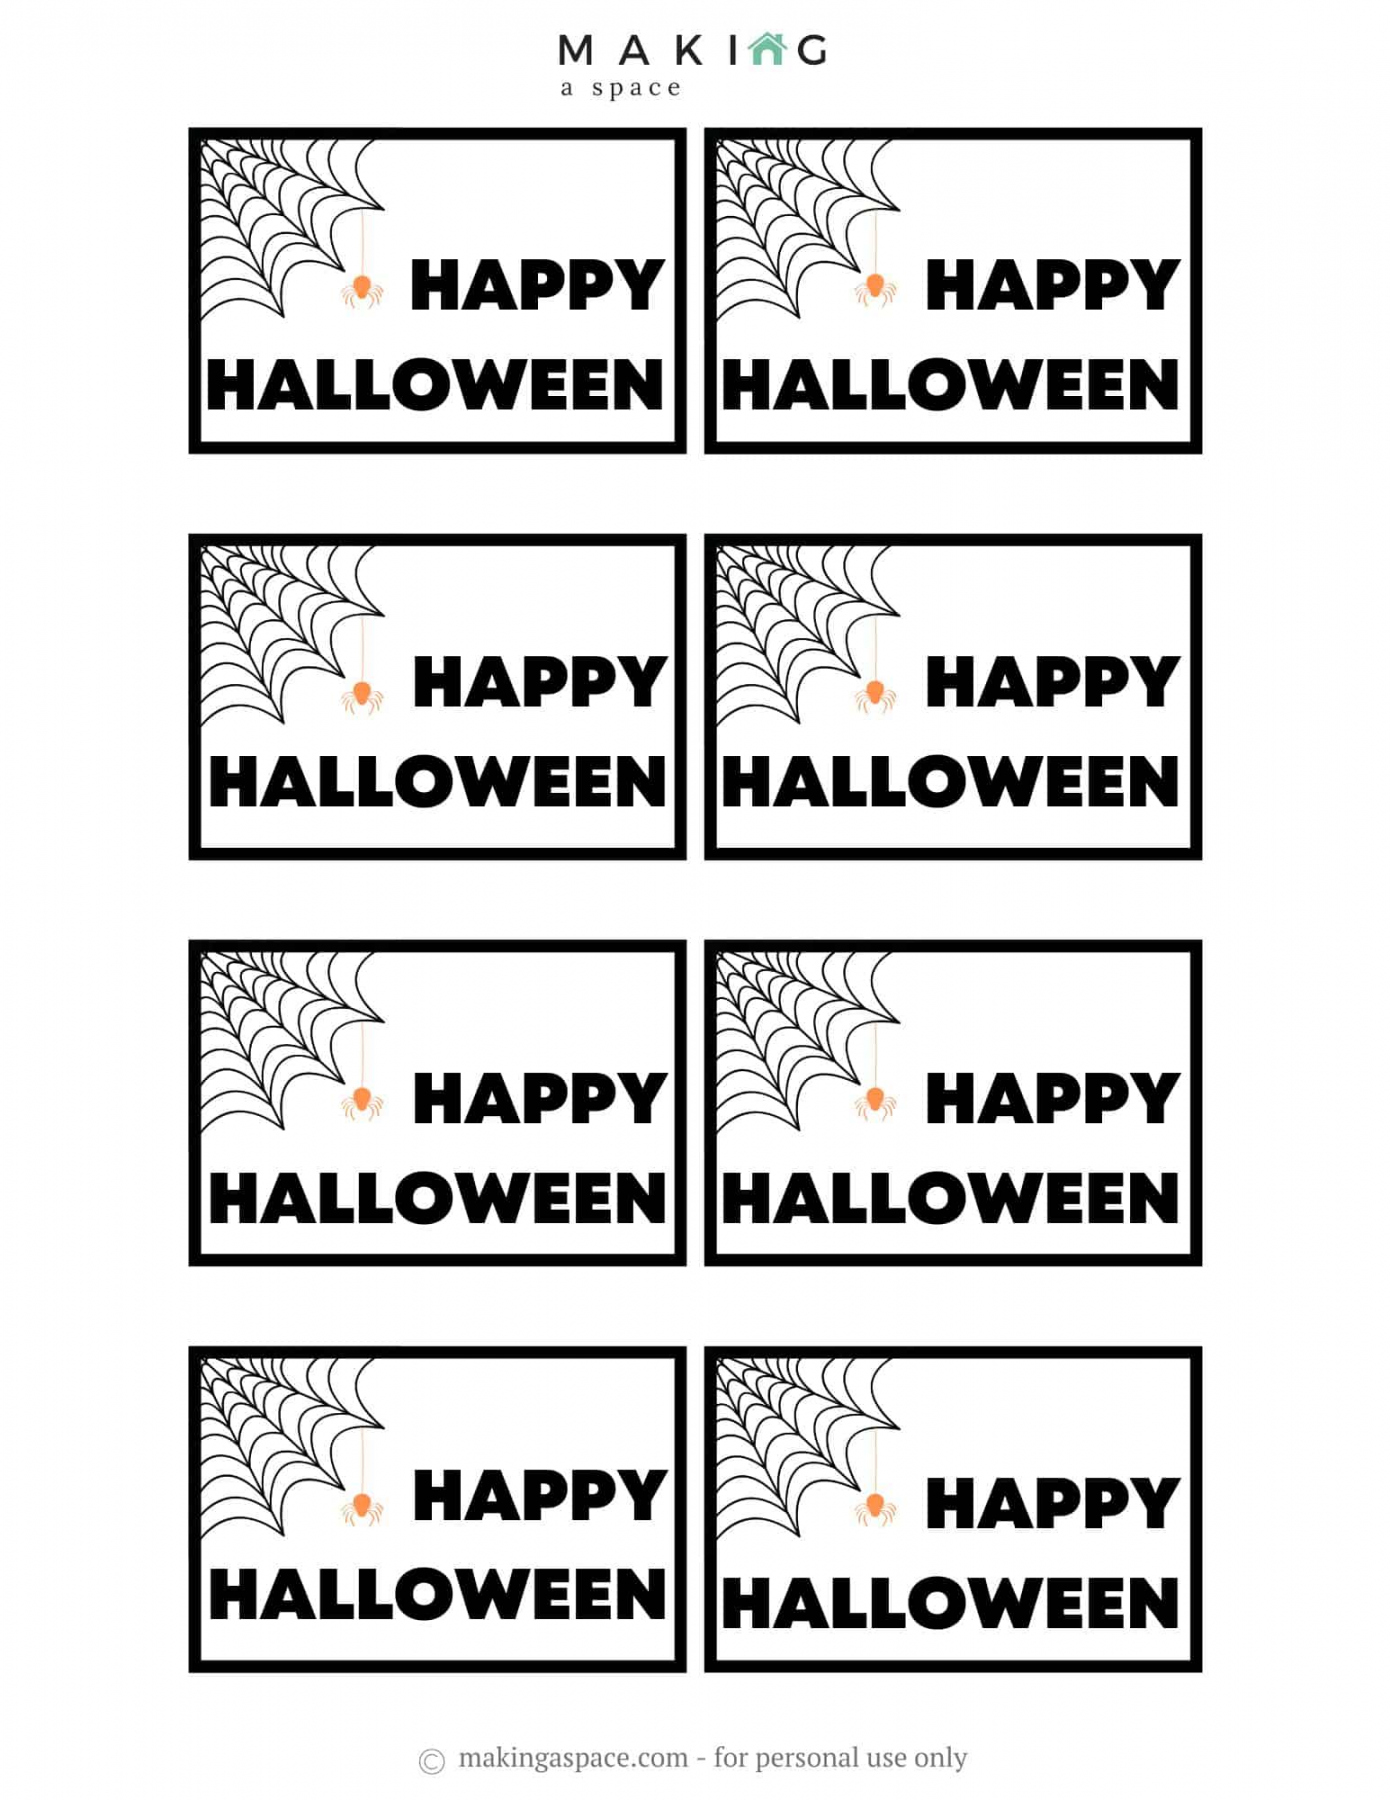 Free Printable Halloween Gift Tags - Making A Space - FREE Printables - Free Printable Halloween Gift Tags Printable